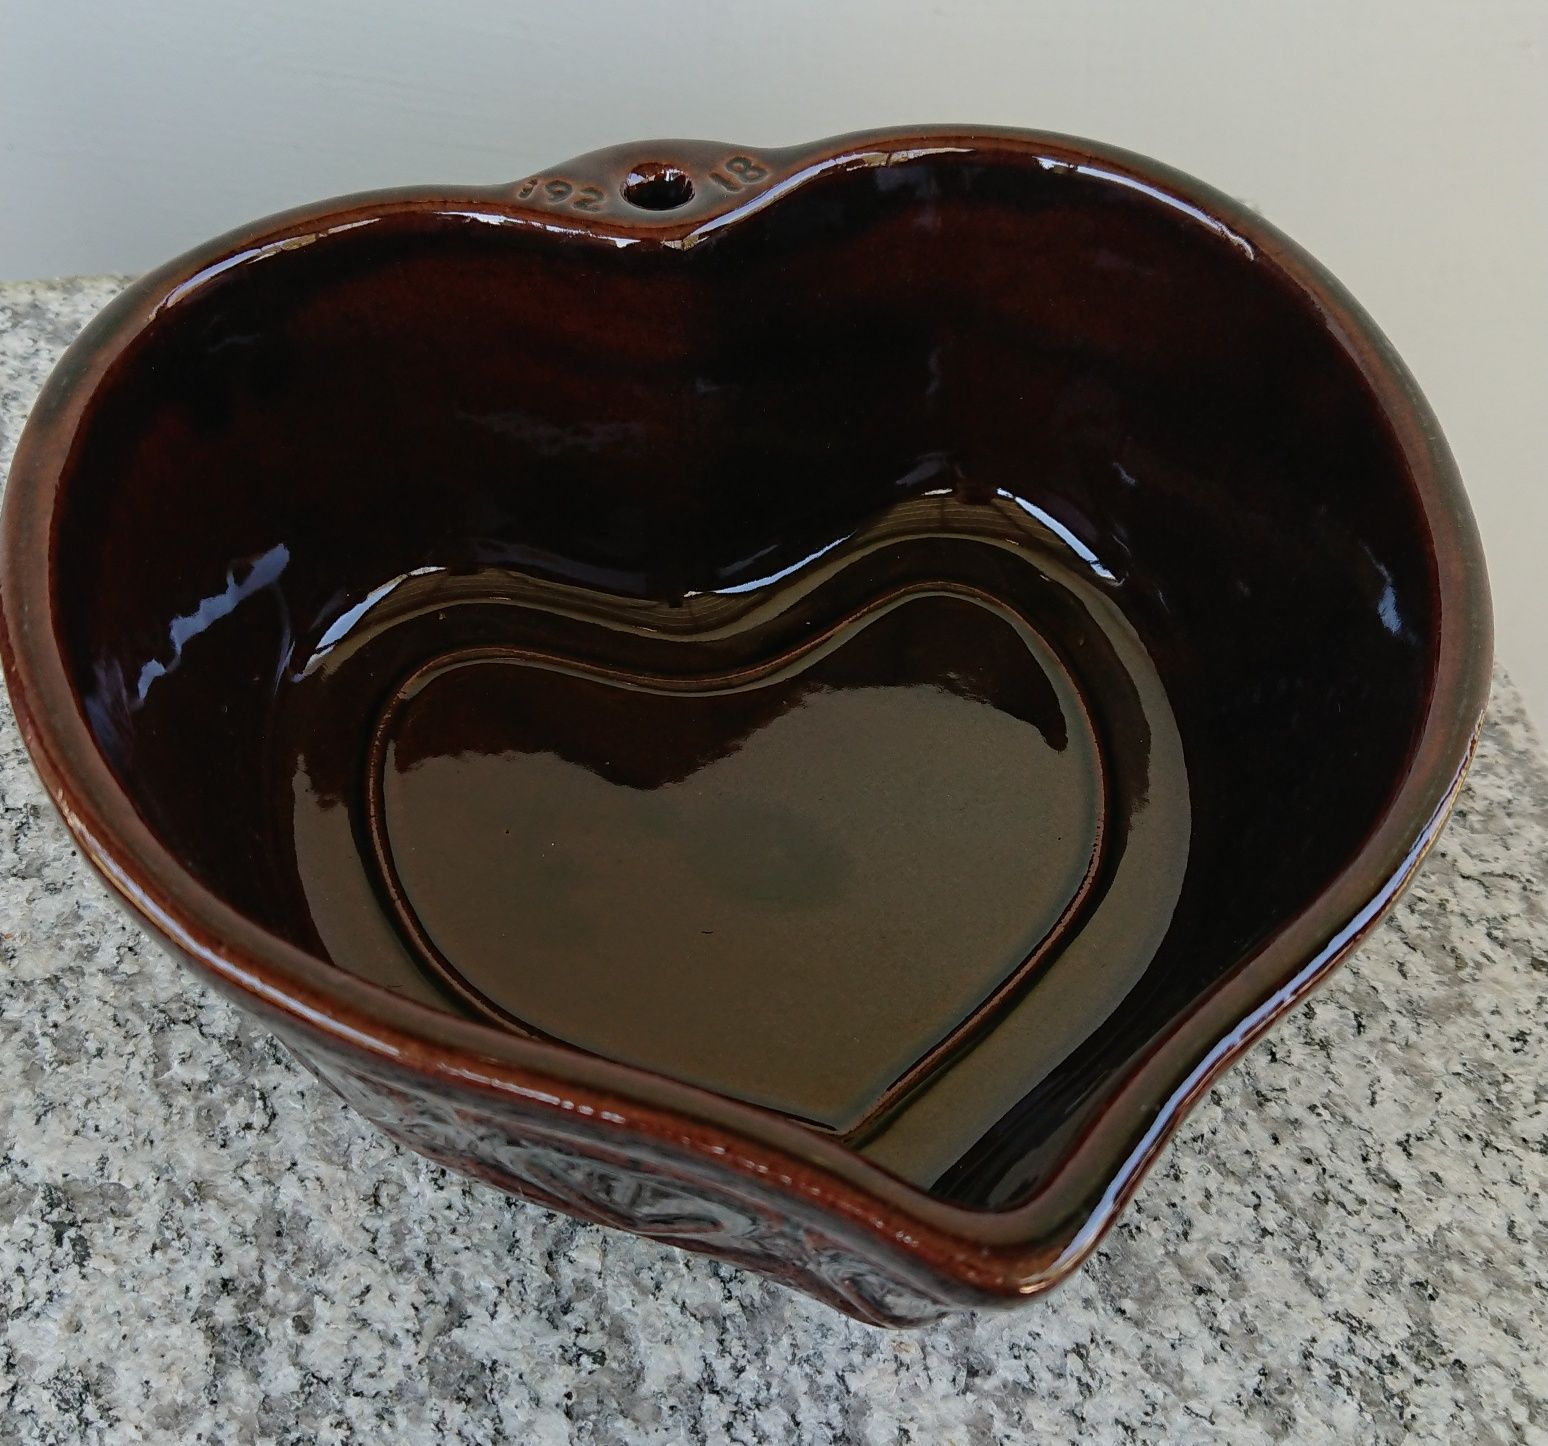 Ceramiczna miseczka w kształcie serca, z ornamentami w kształcie serca